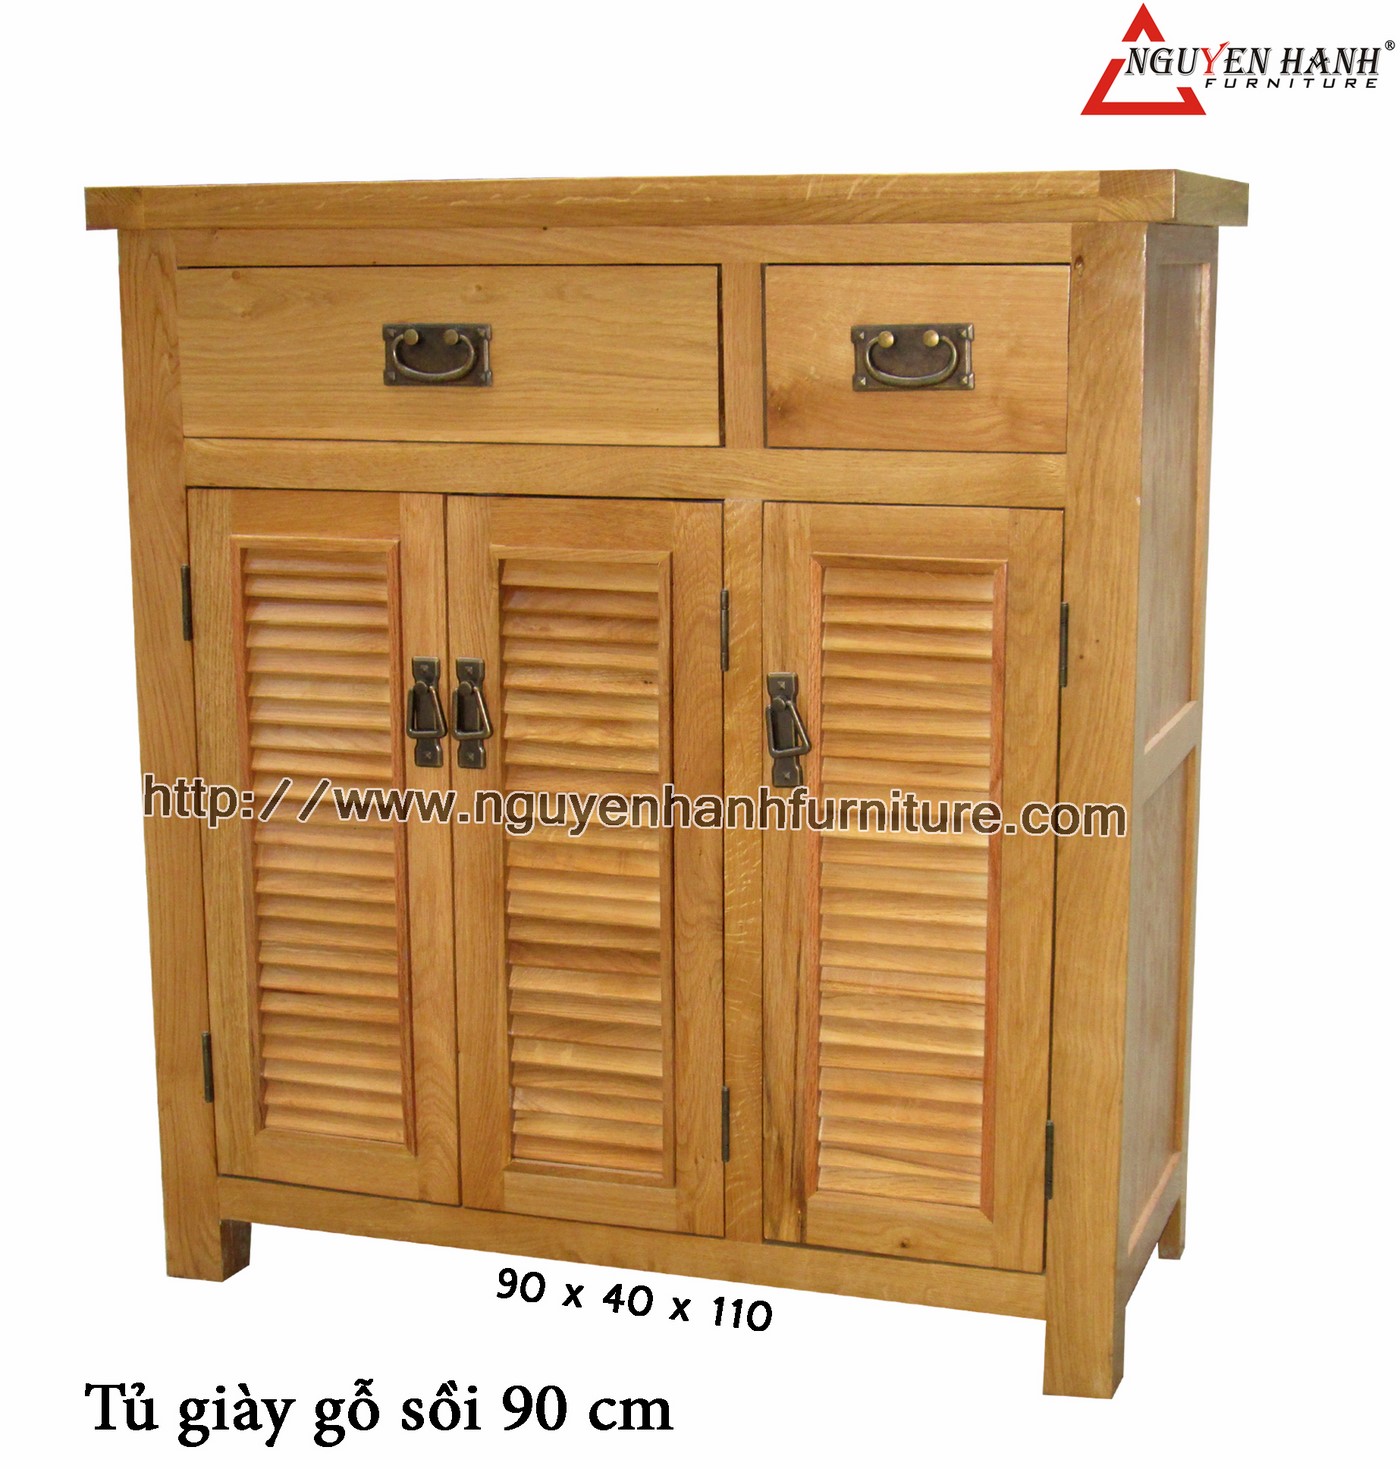 Name product: oak wood shoes cabinet 90cm - Dimensions: 90 x 40 x 100 (H) - Description: Natural oak wood